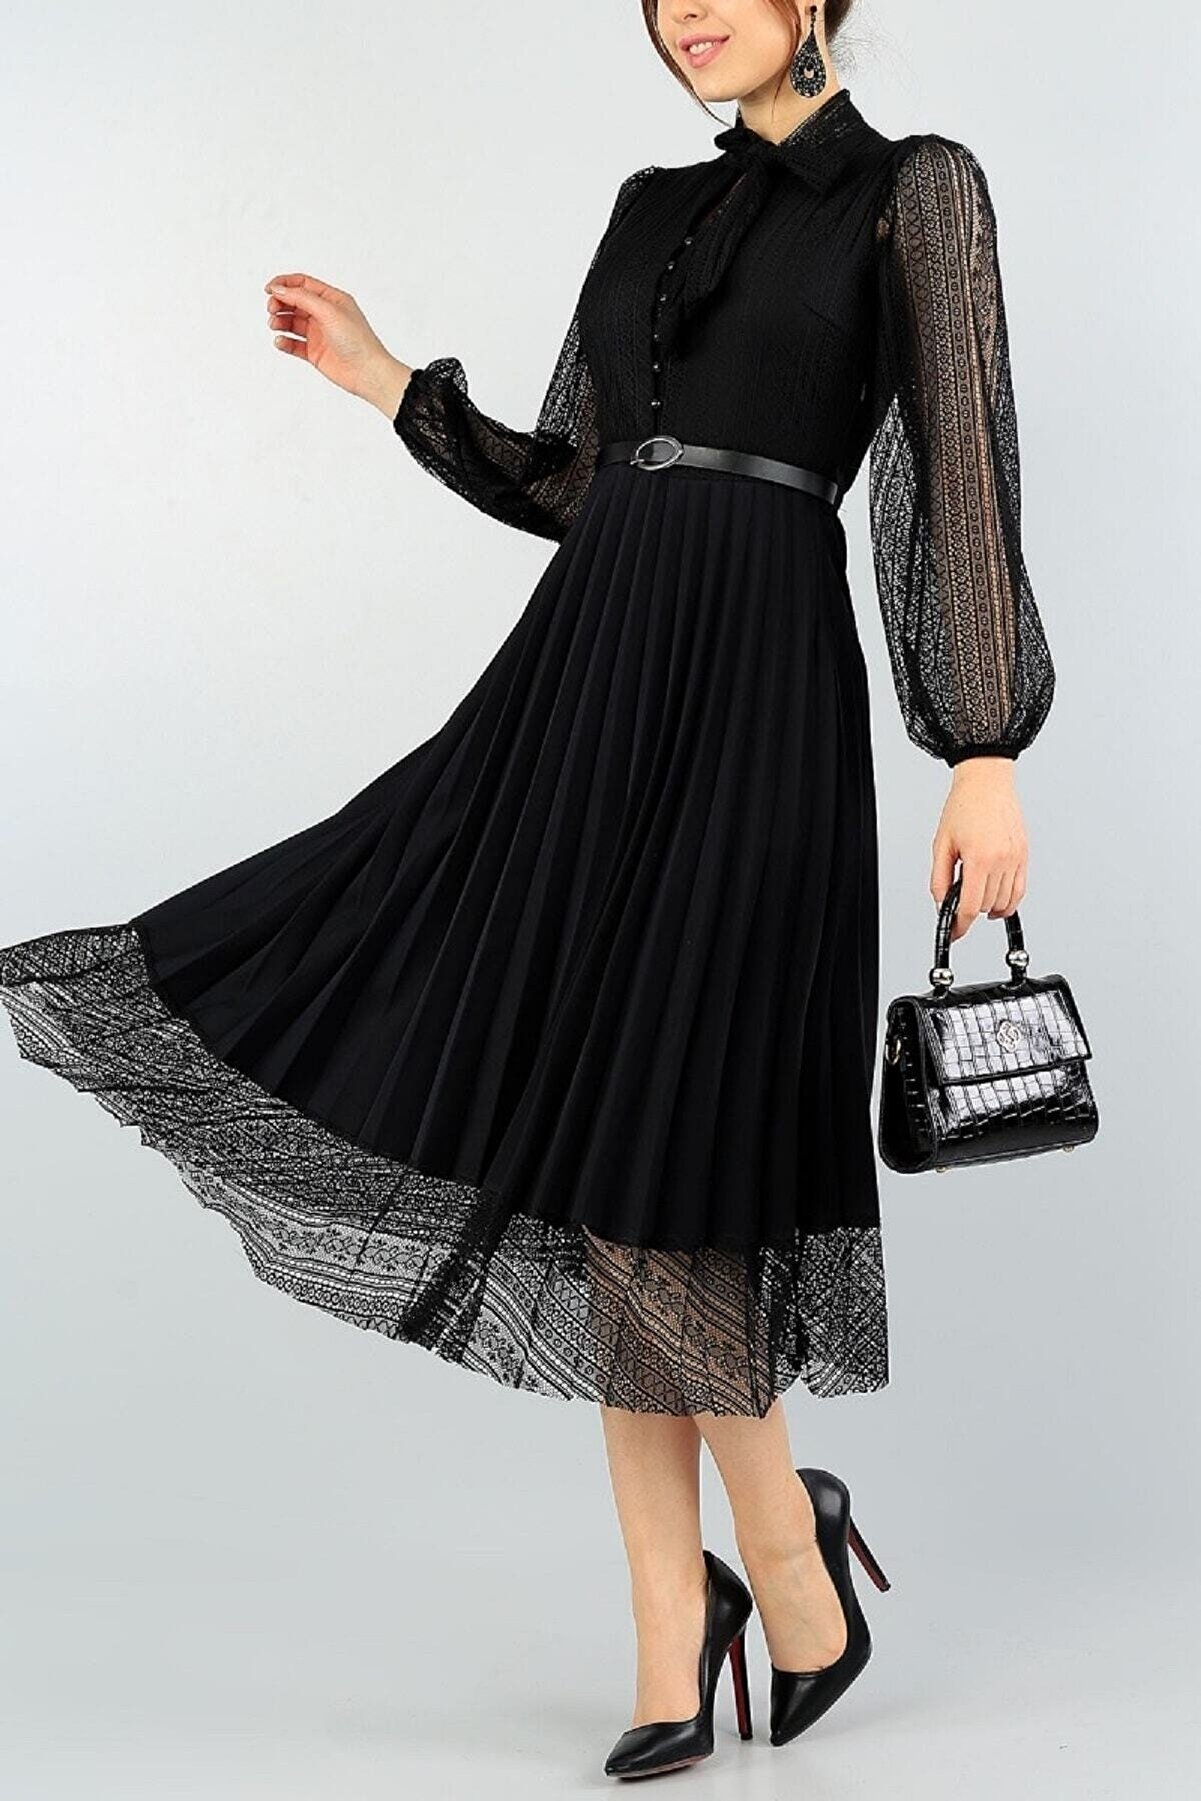 lovebox Piliseli Dantel Detaylı Kemerli Tasarım Uzun Kollu Siyah Elbise 57834